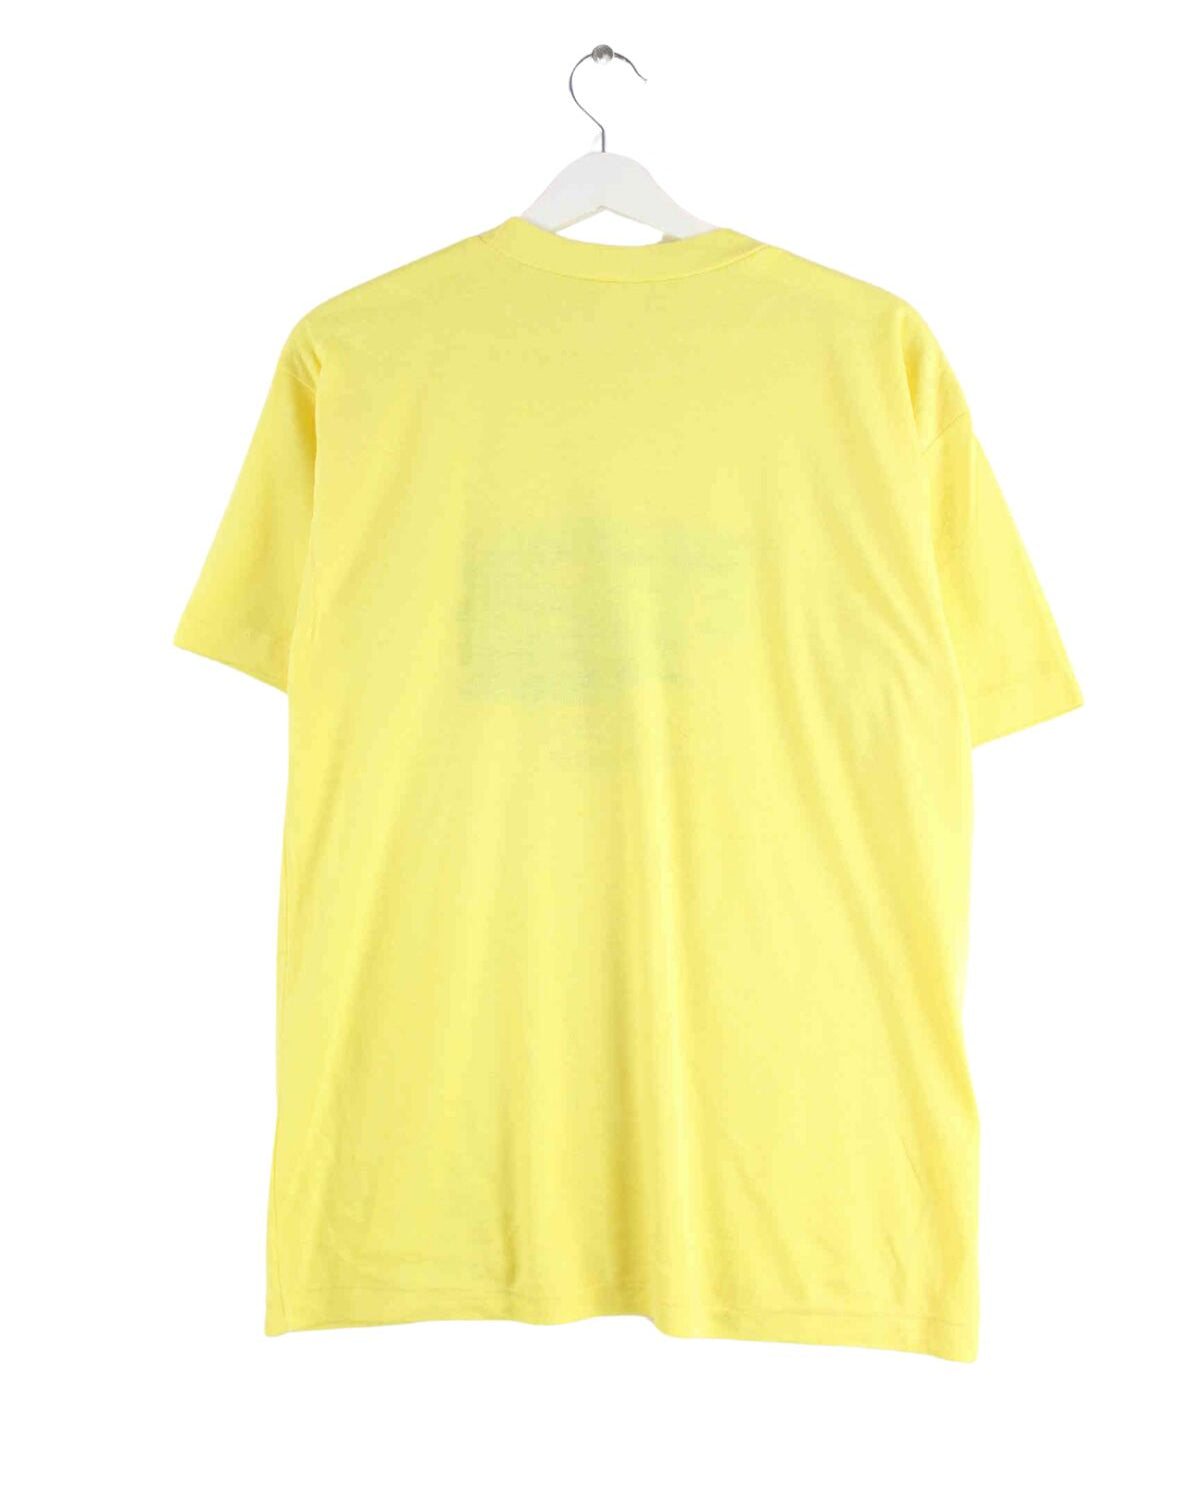 Vintage 80s Virgin Islands Print Single Stitched T-Shirt Gelb M (back image)